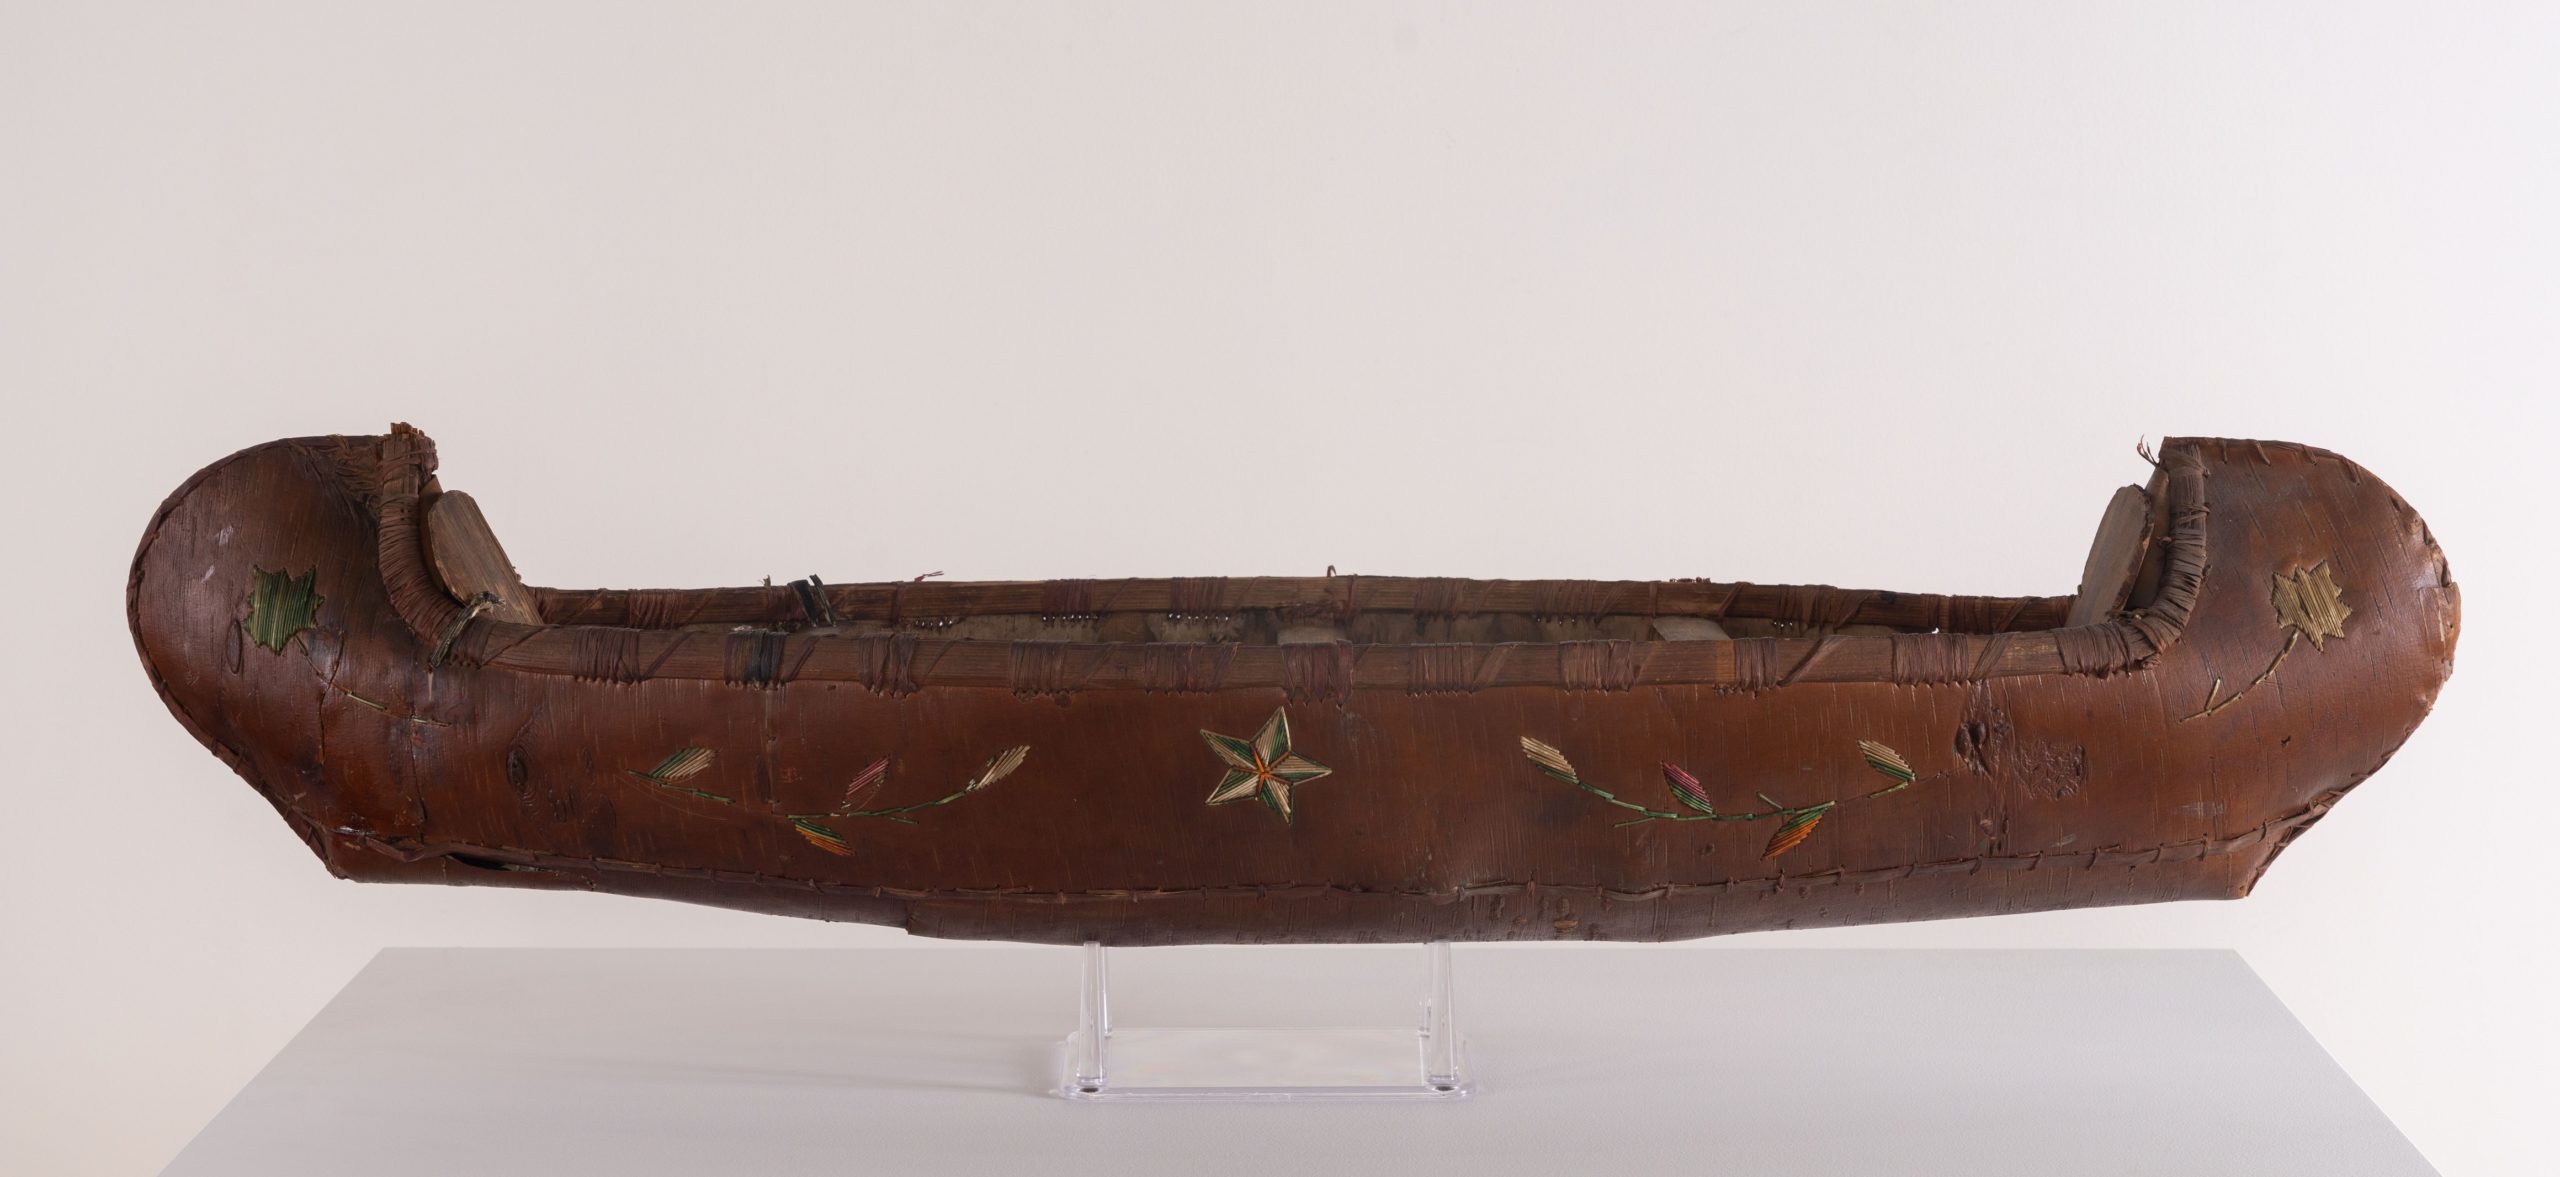 native american canoe model rel=